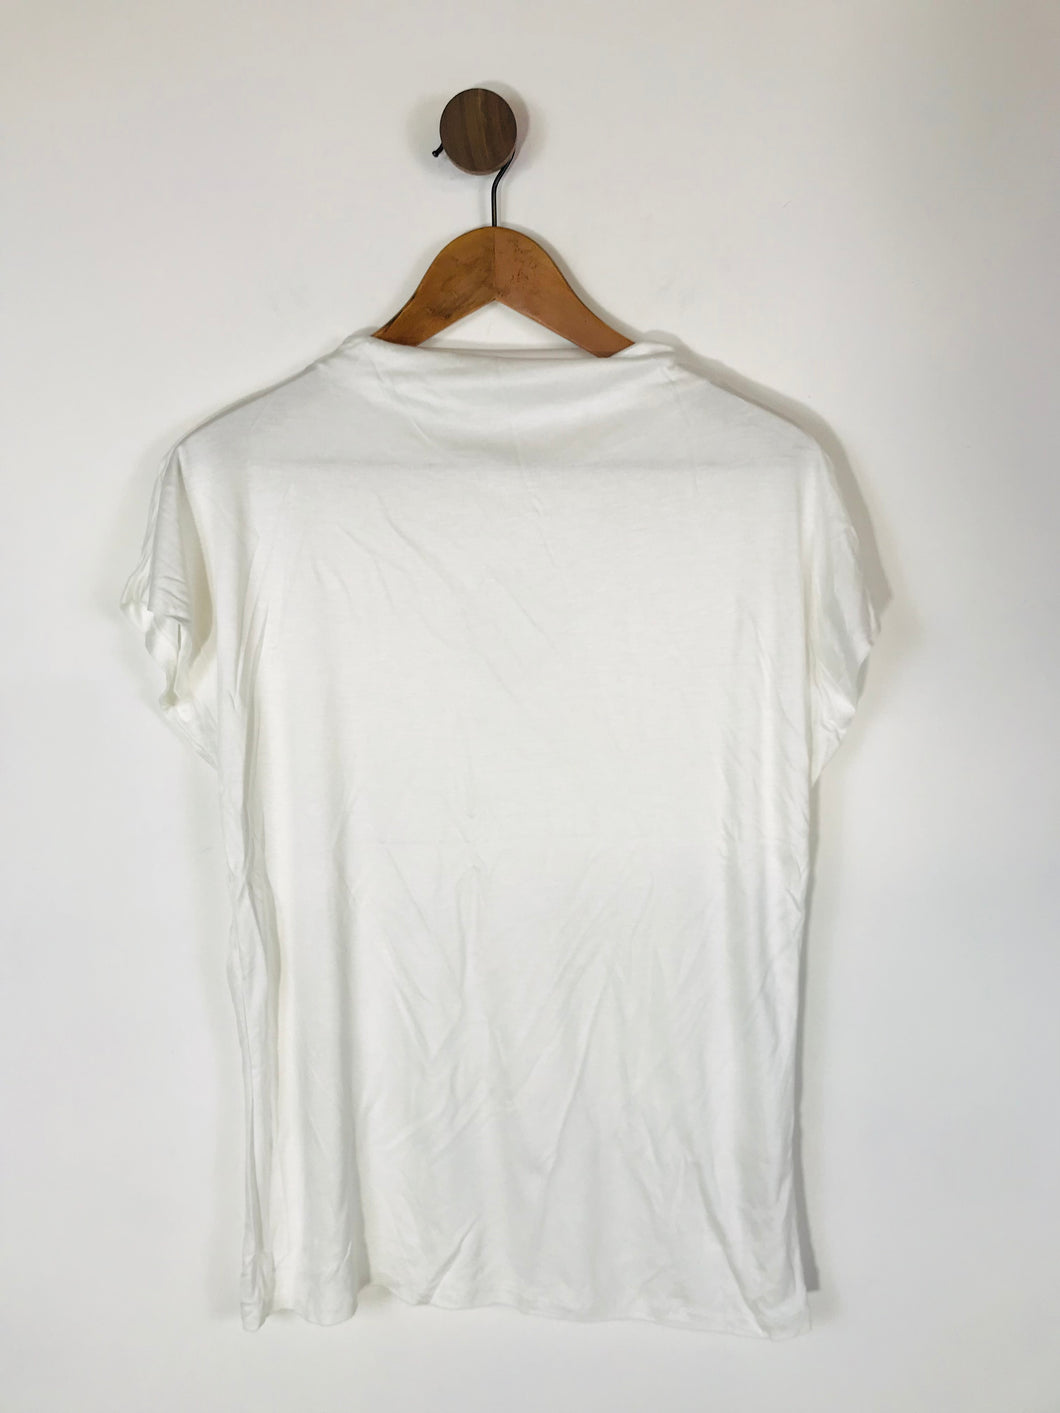 Reiss Women's High Neck T-Shirt | M UK10-12 | White